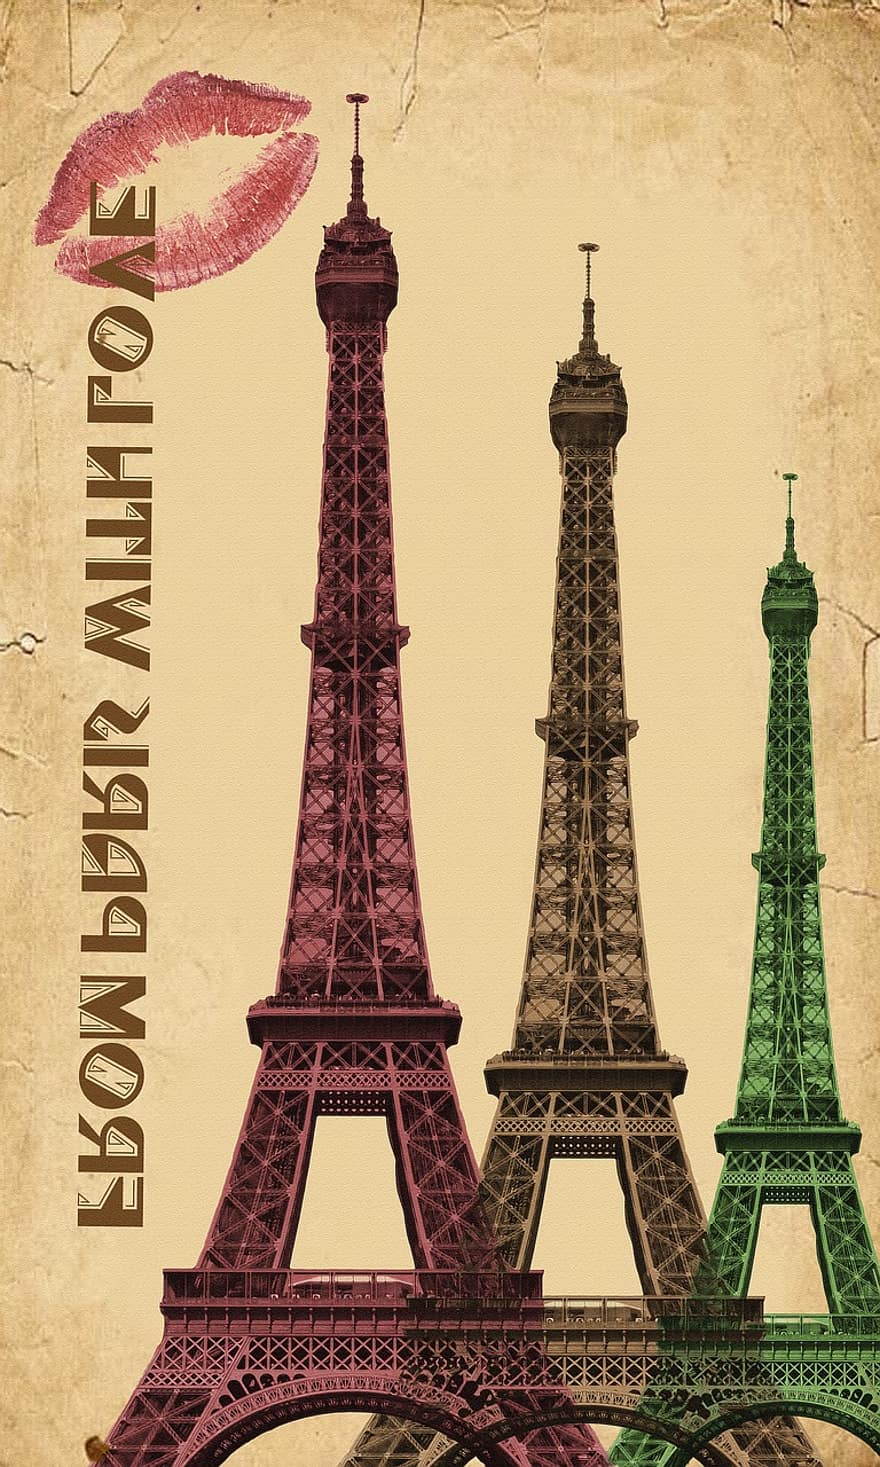 프랑스, 파리, 파리 프랑스, 시티, 경계표, 여행, 유럽, 건축물, 프랑스 국민, 탑, 유명한